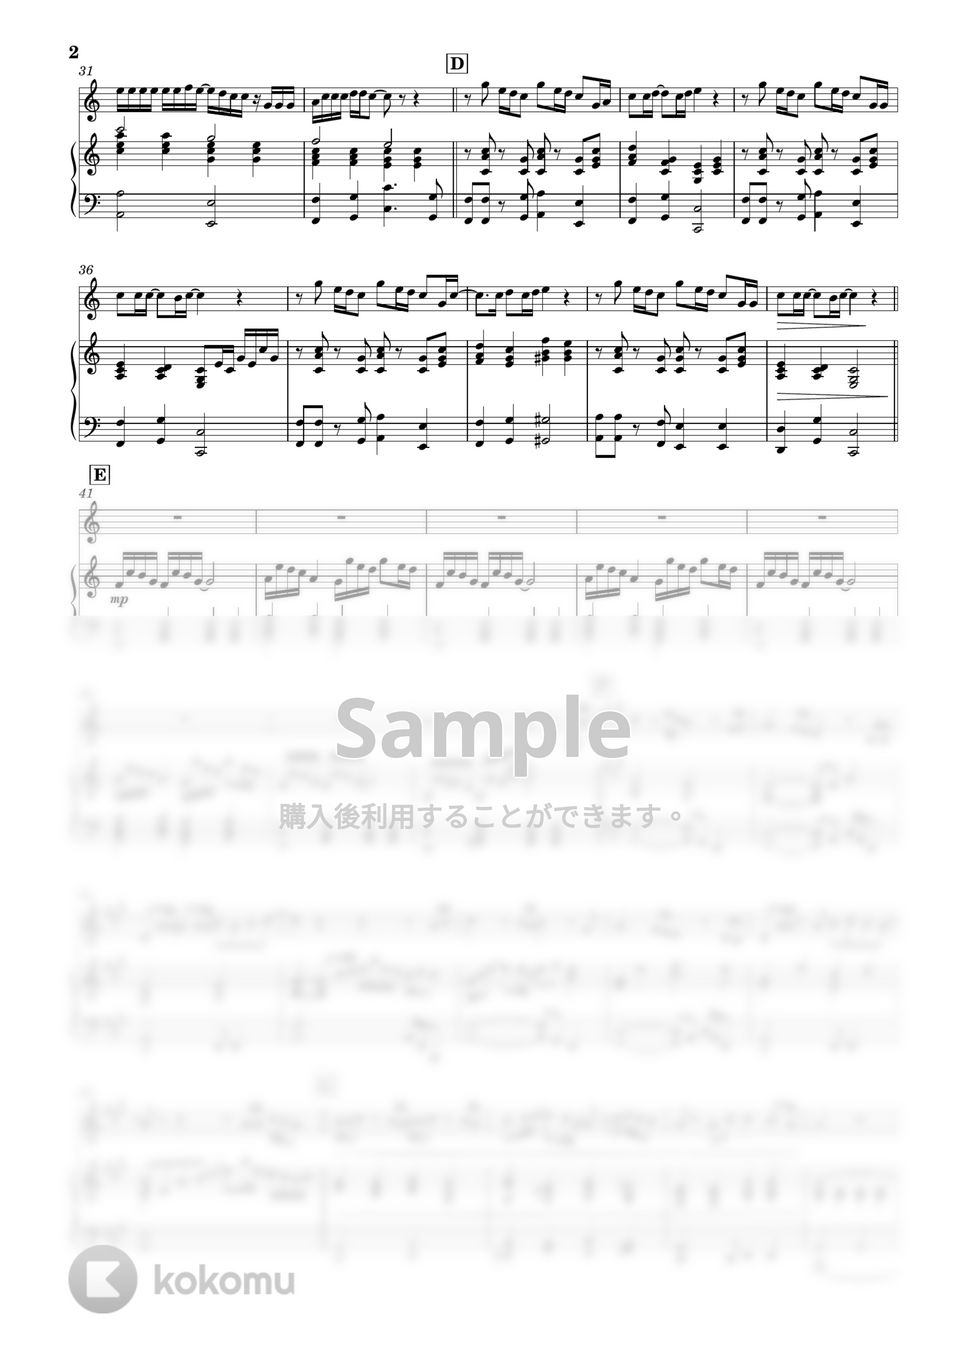 RADWIMPS - カナタハルカ (フルート&ピアノ伴奏) by PiaFlu